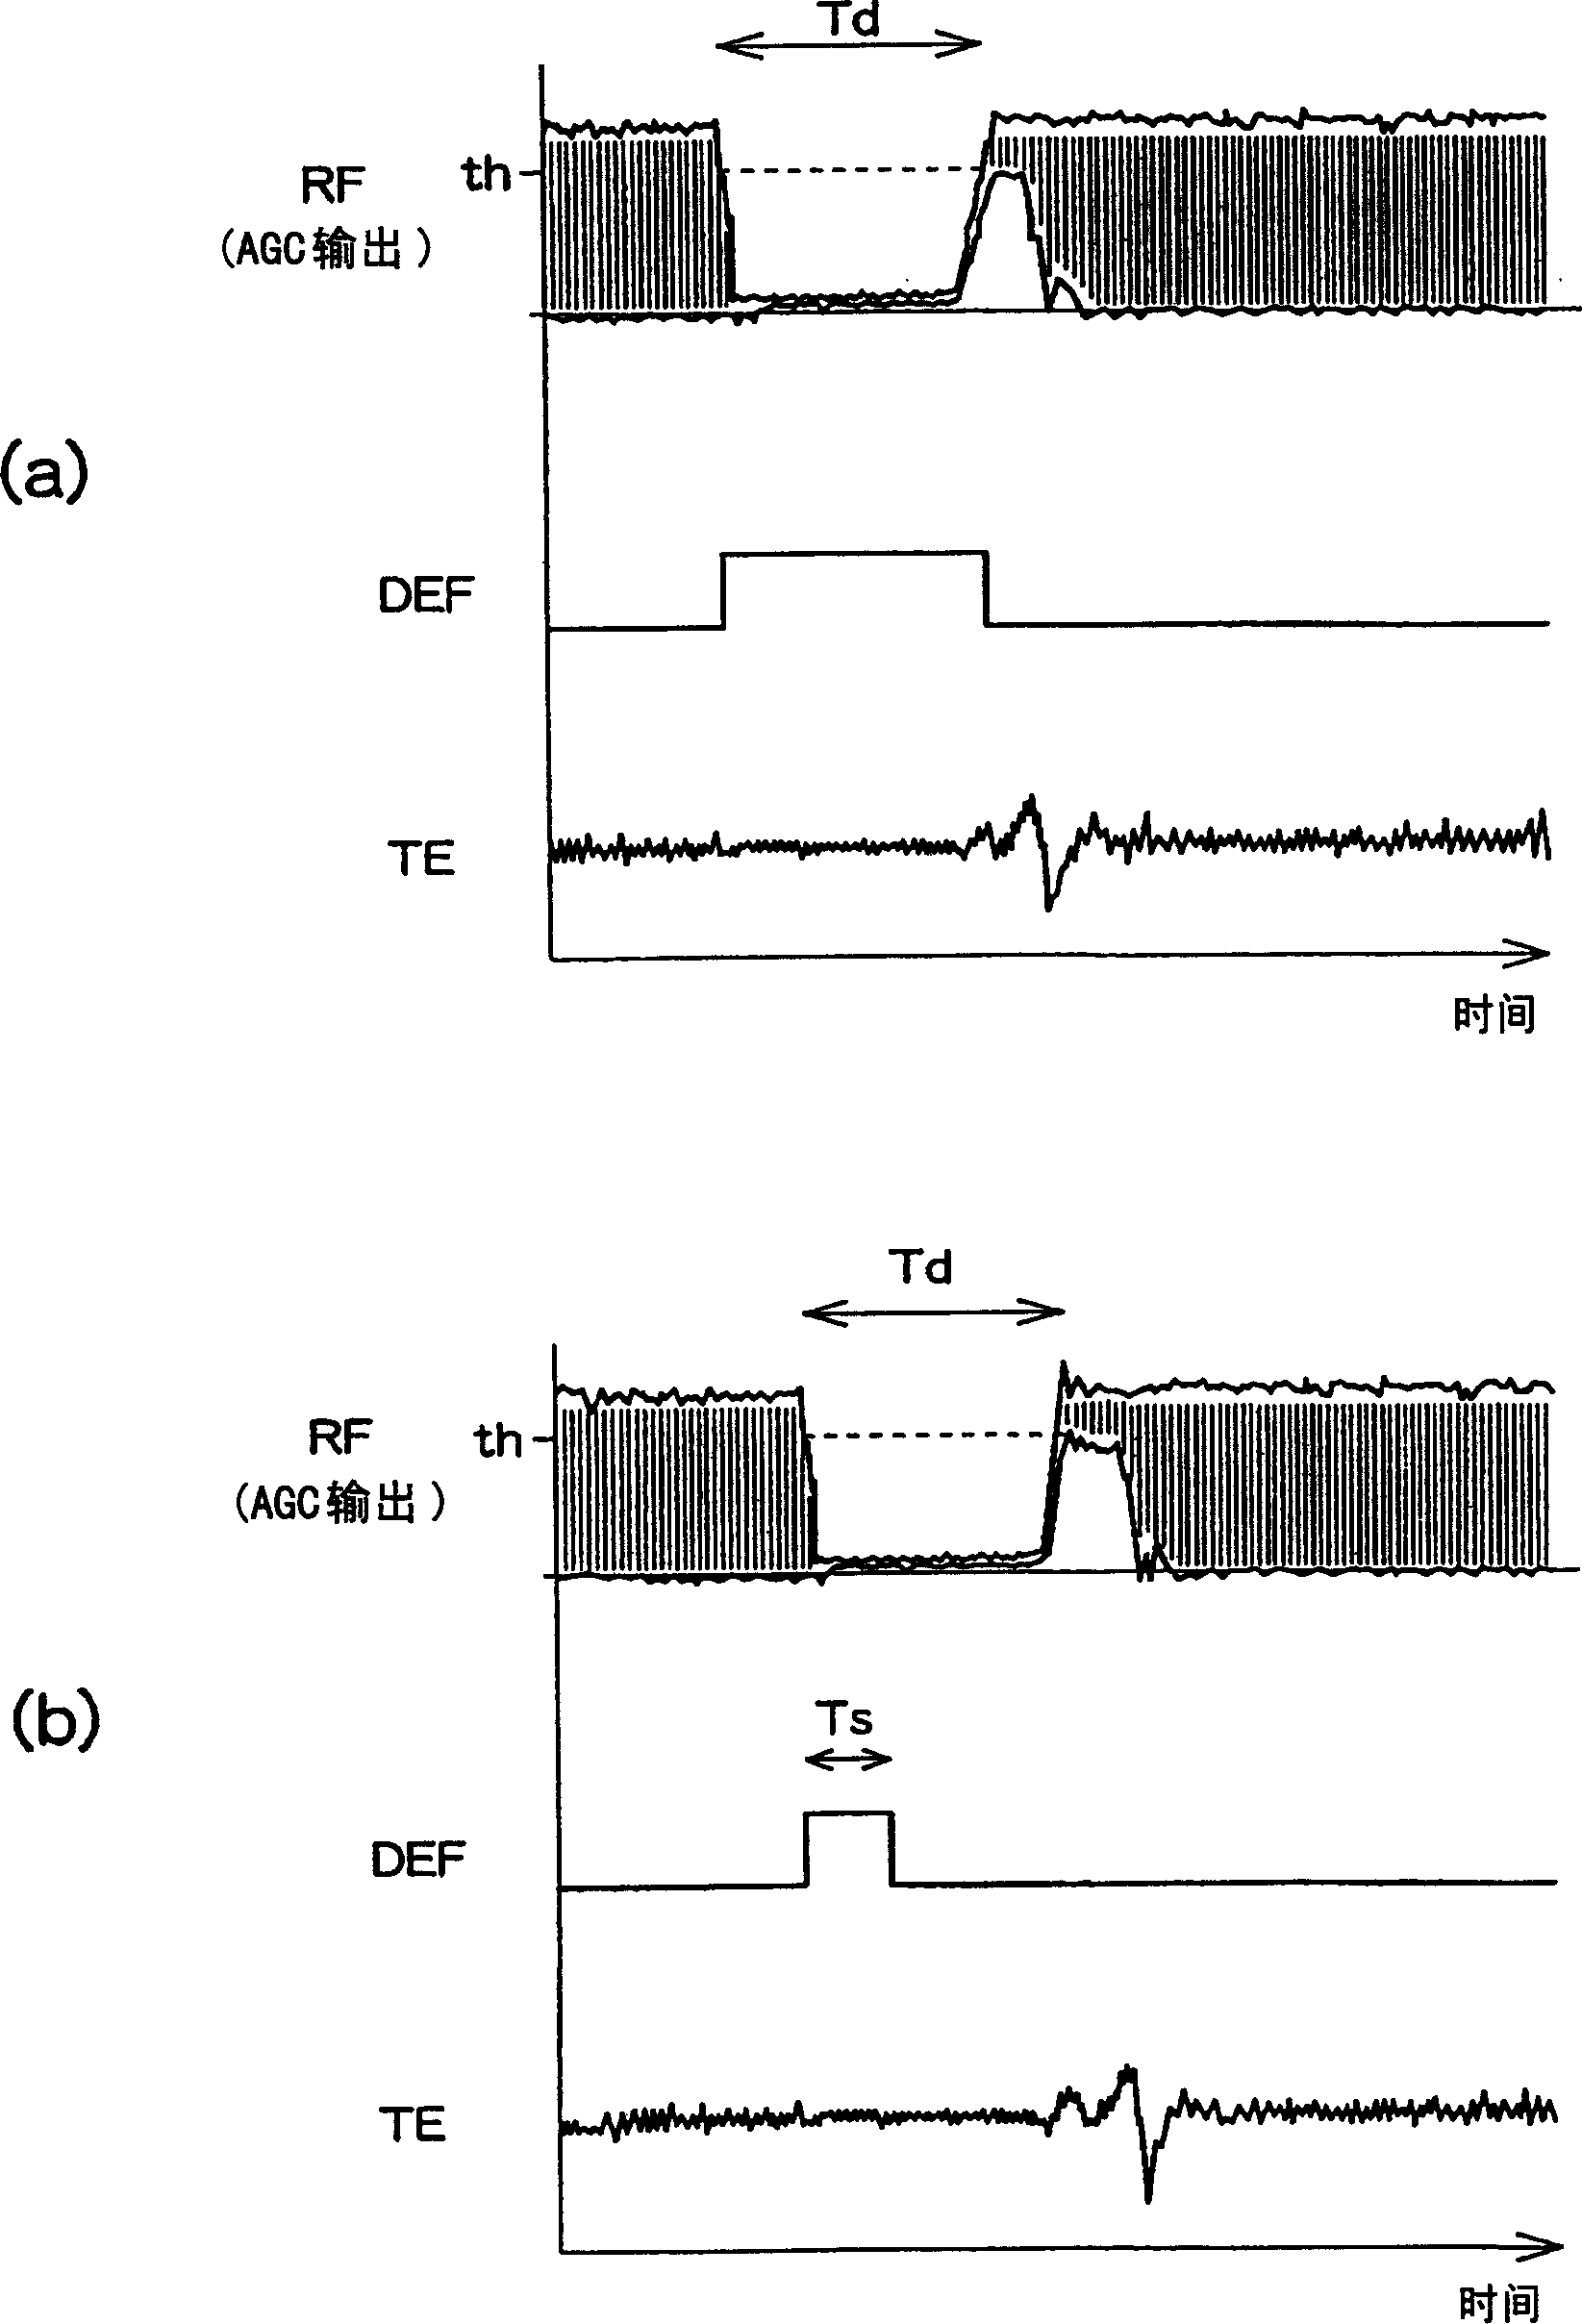 RF circuit for minidisc regeneration apparatus